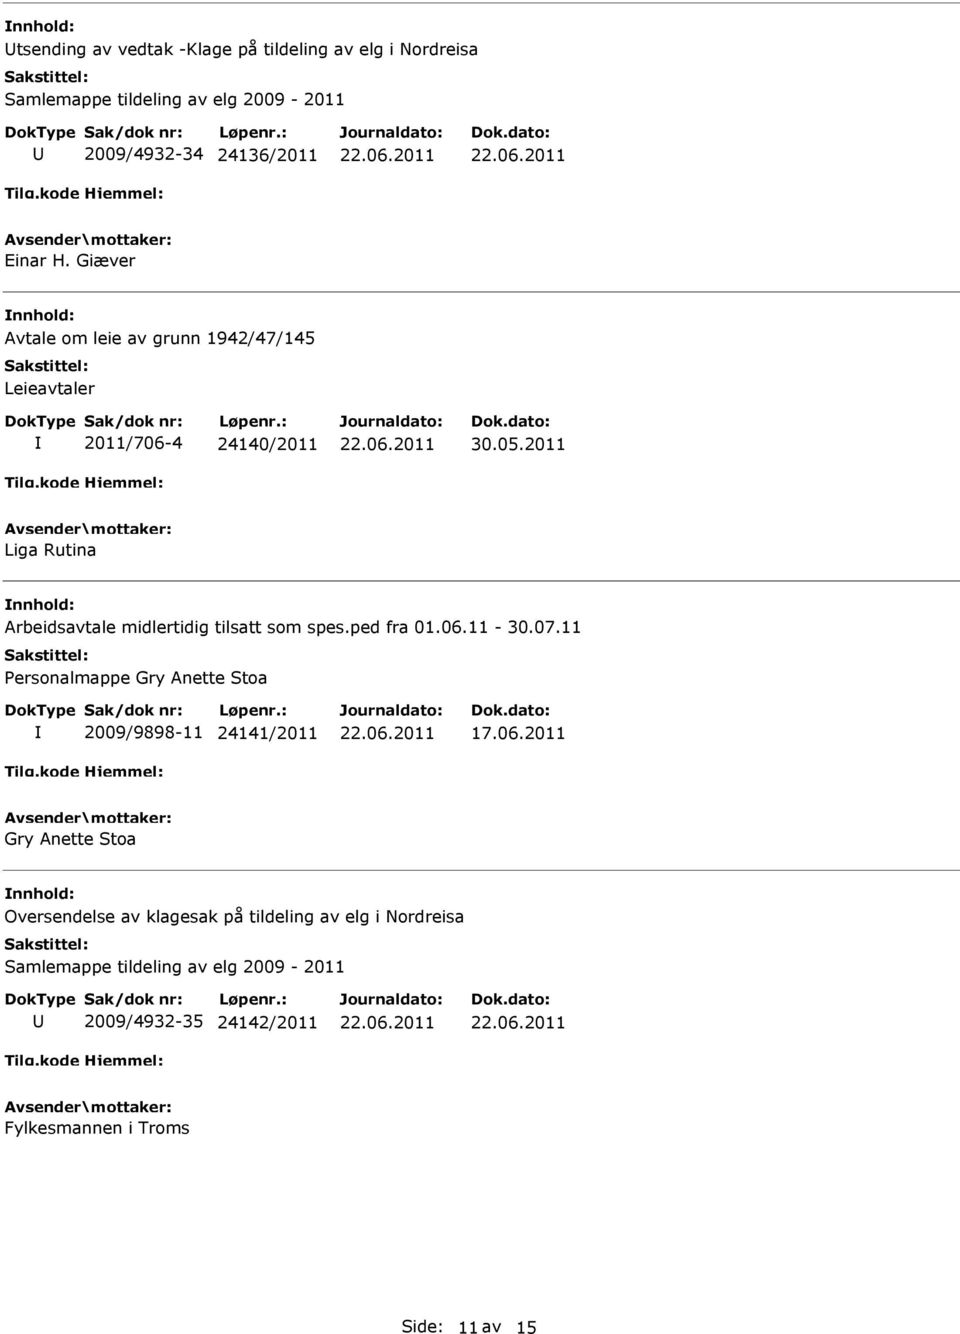 2011 Liga Rutina Arbeidsavtale midlertidig tilsatt som spes.ped fra 01.06.11-30.07.